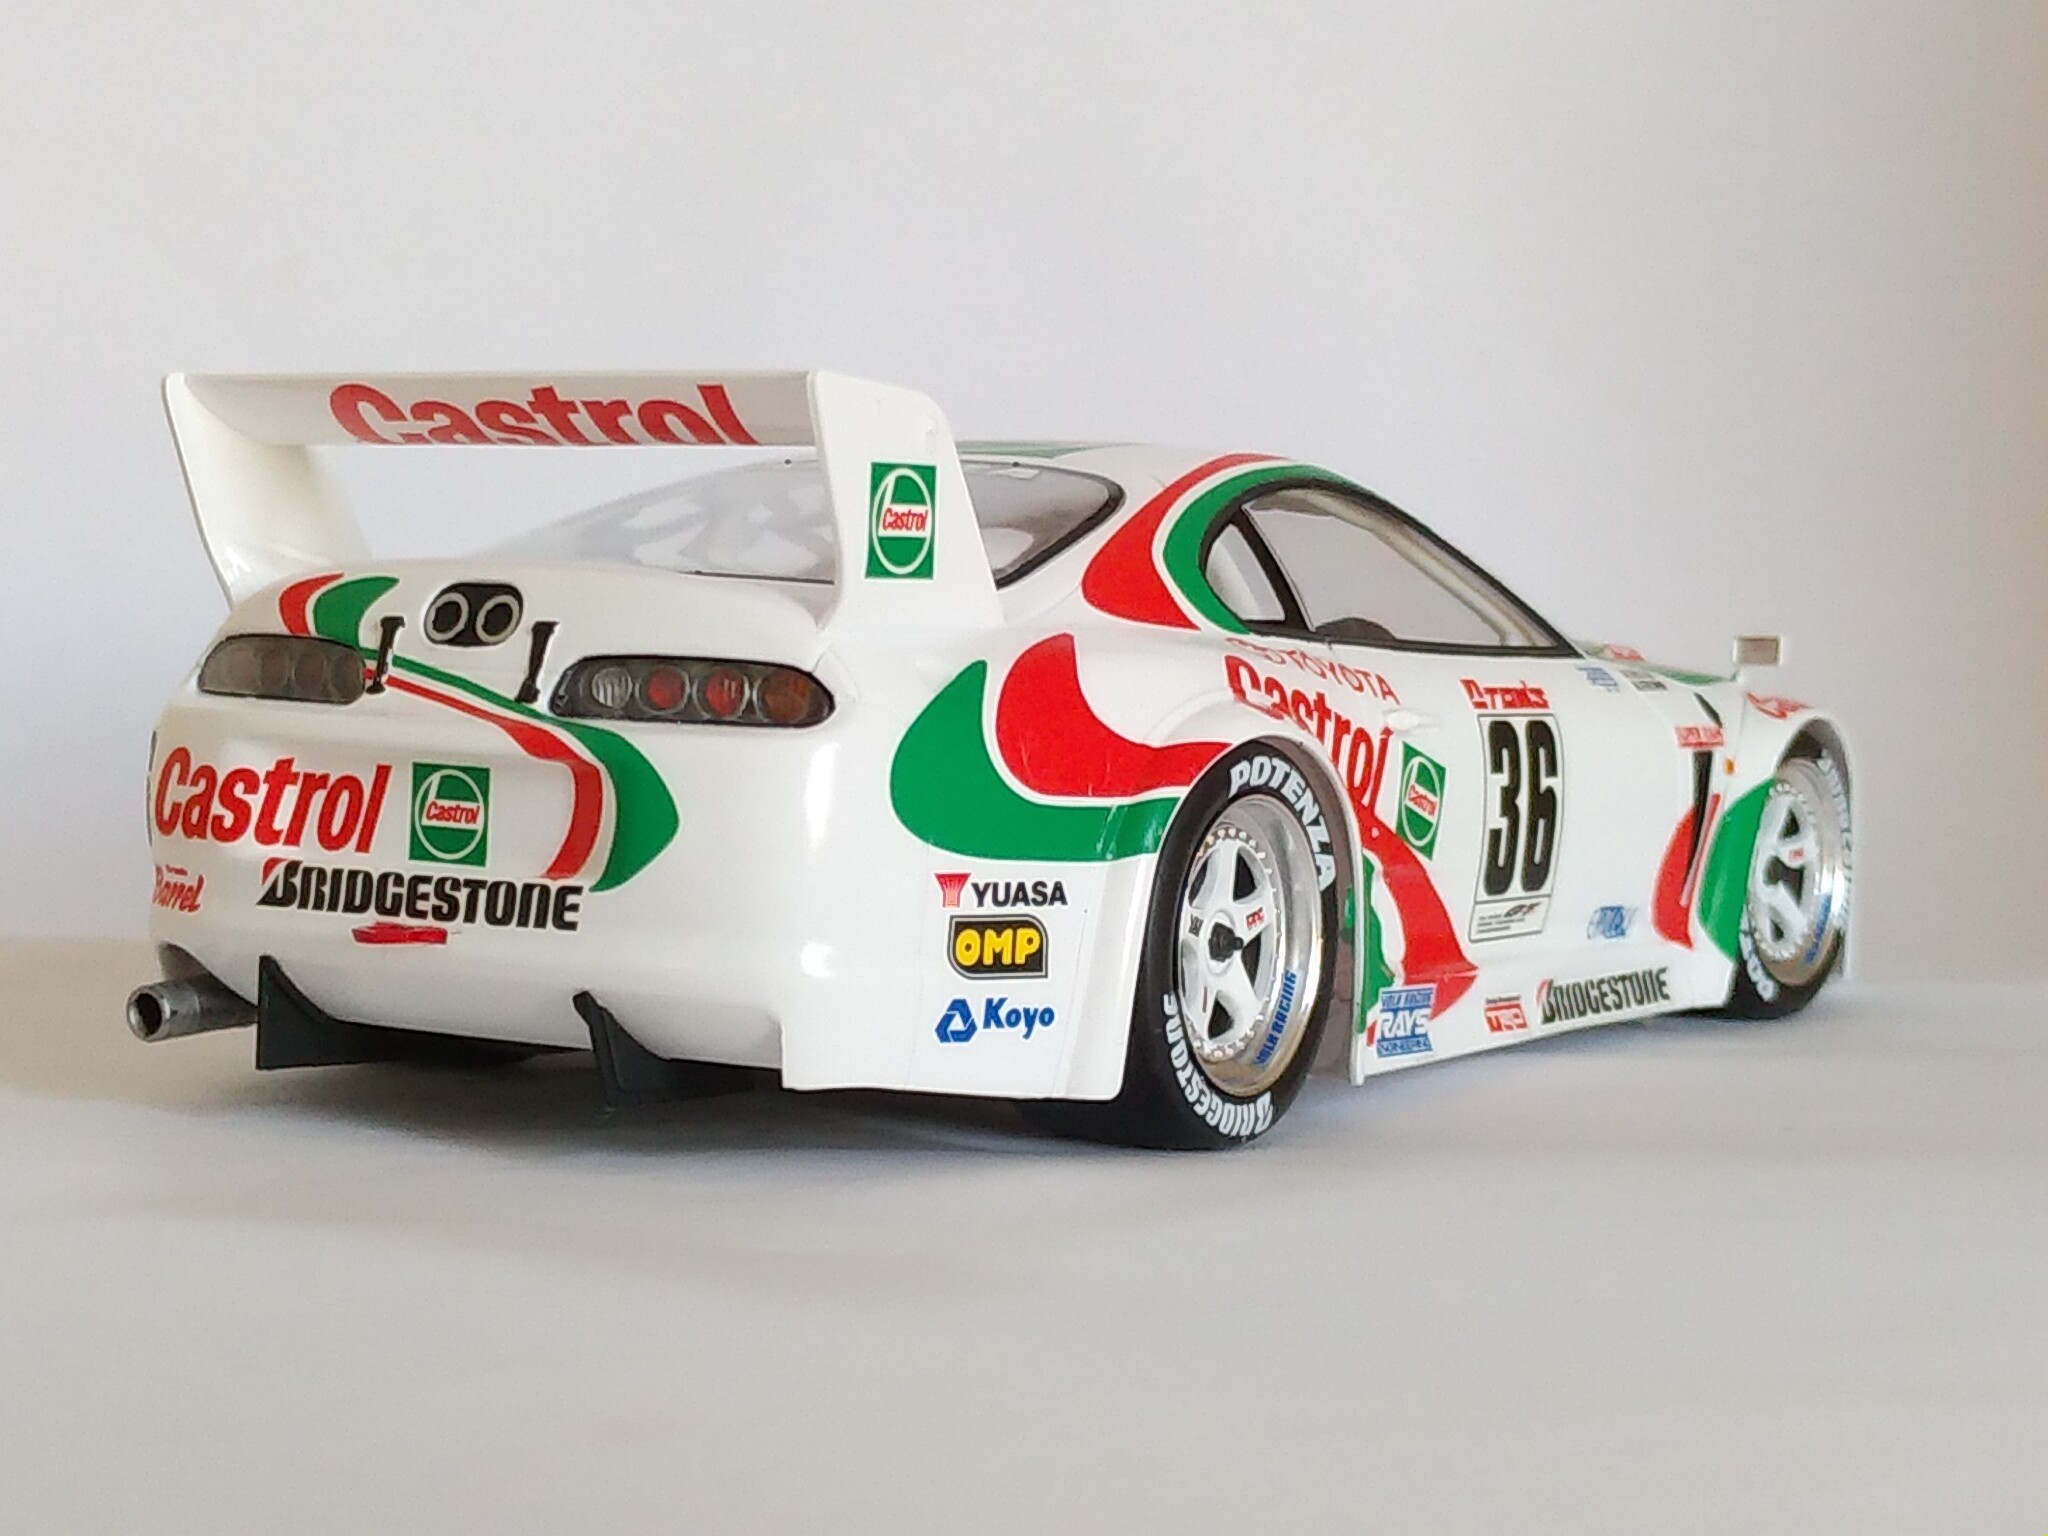 タミヤ・1/24 スポーツカーシリーズ No.163 カストロール トヨタ トムス スープラ GT : 燃やせないごみ研究所